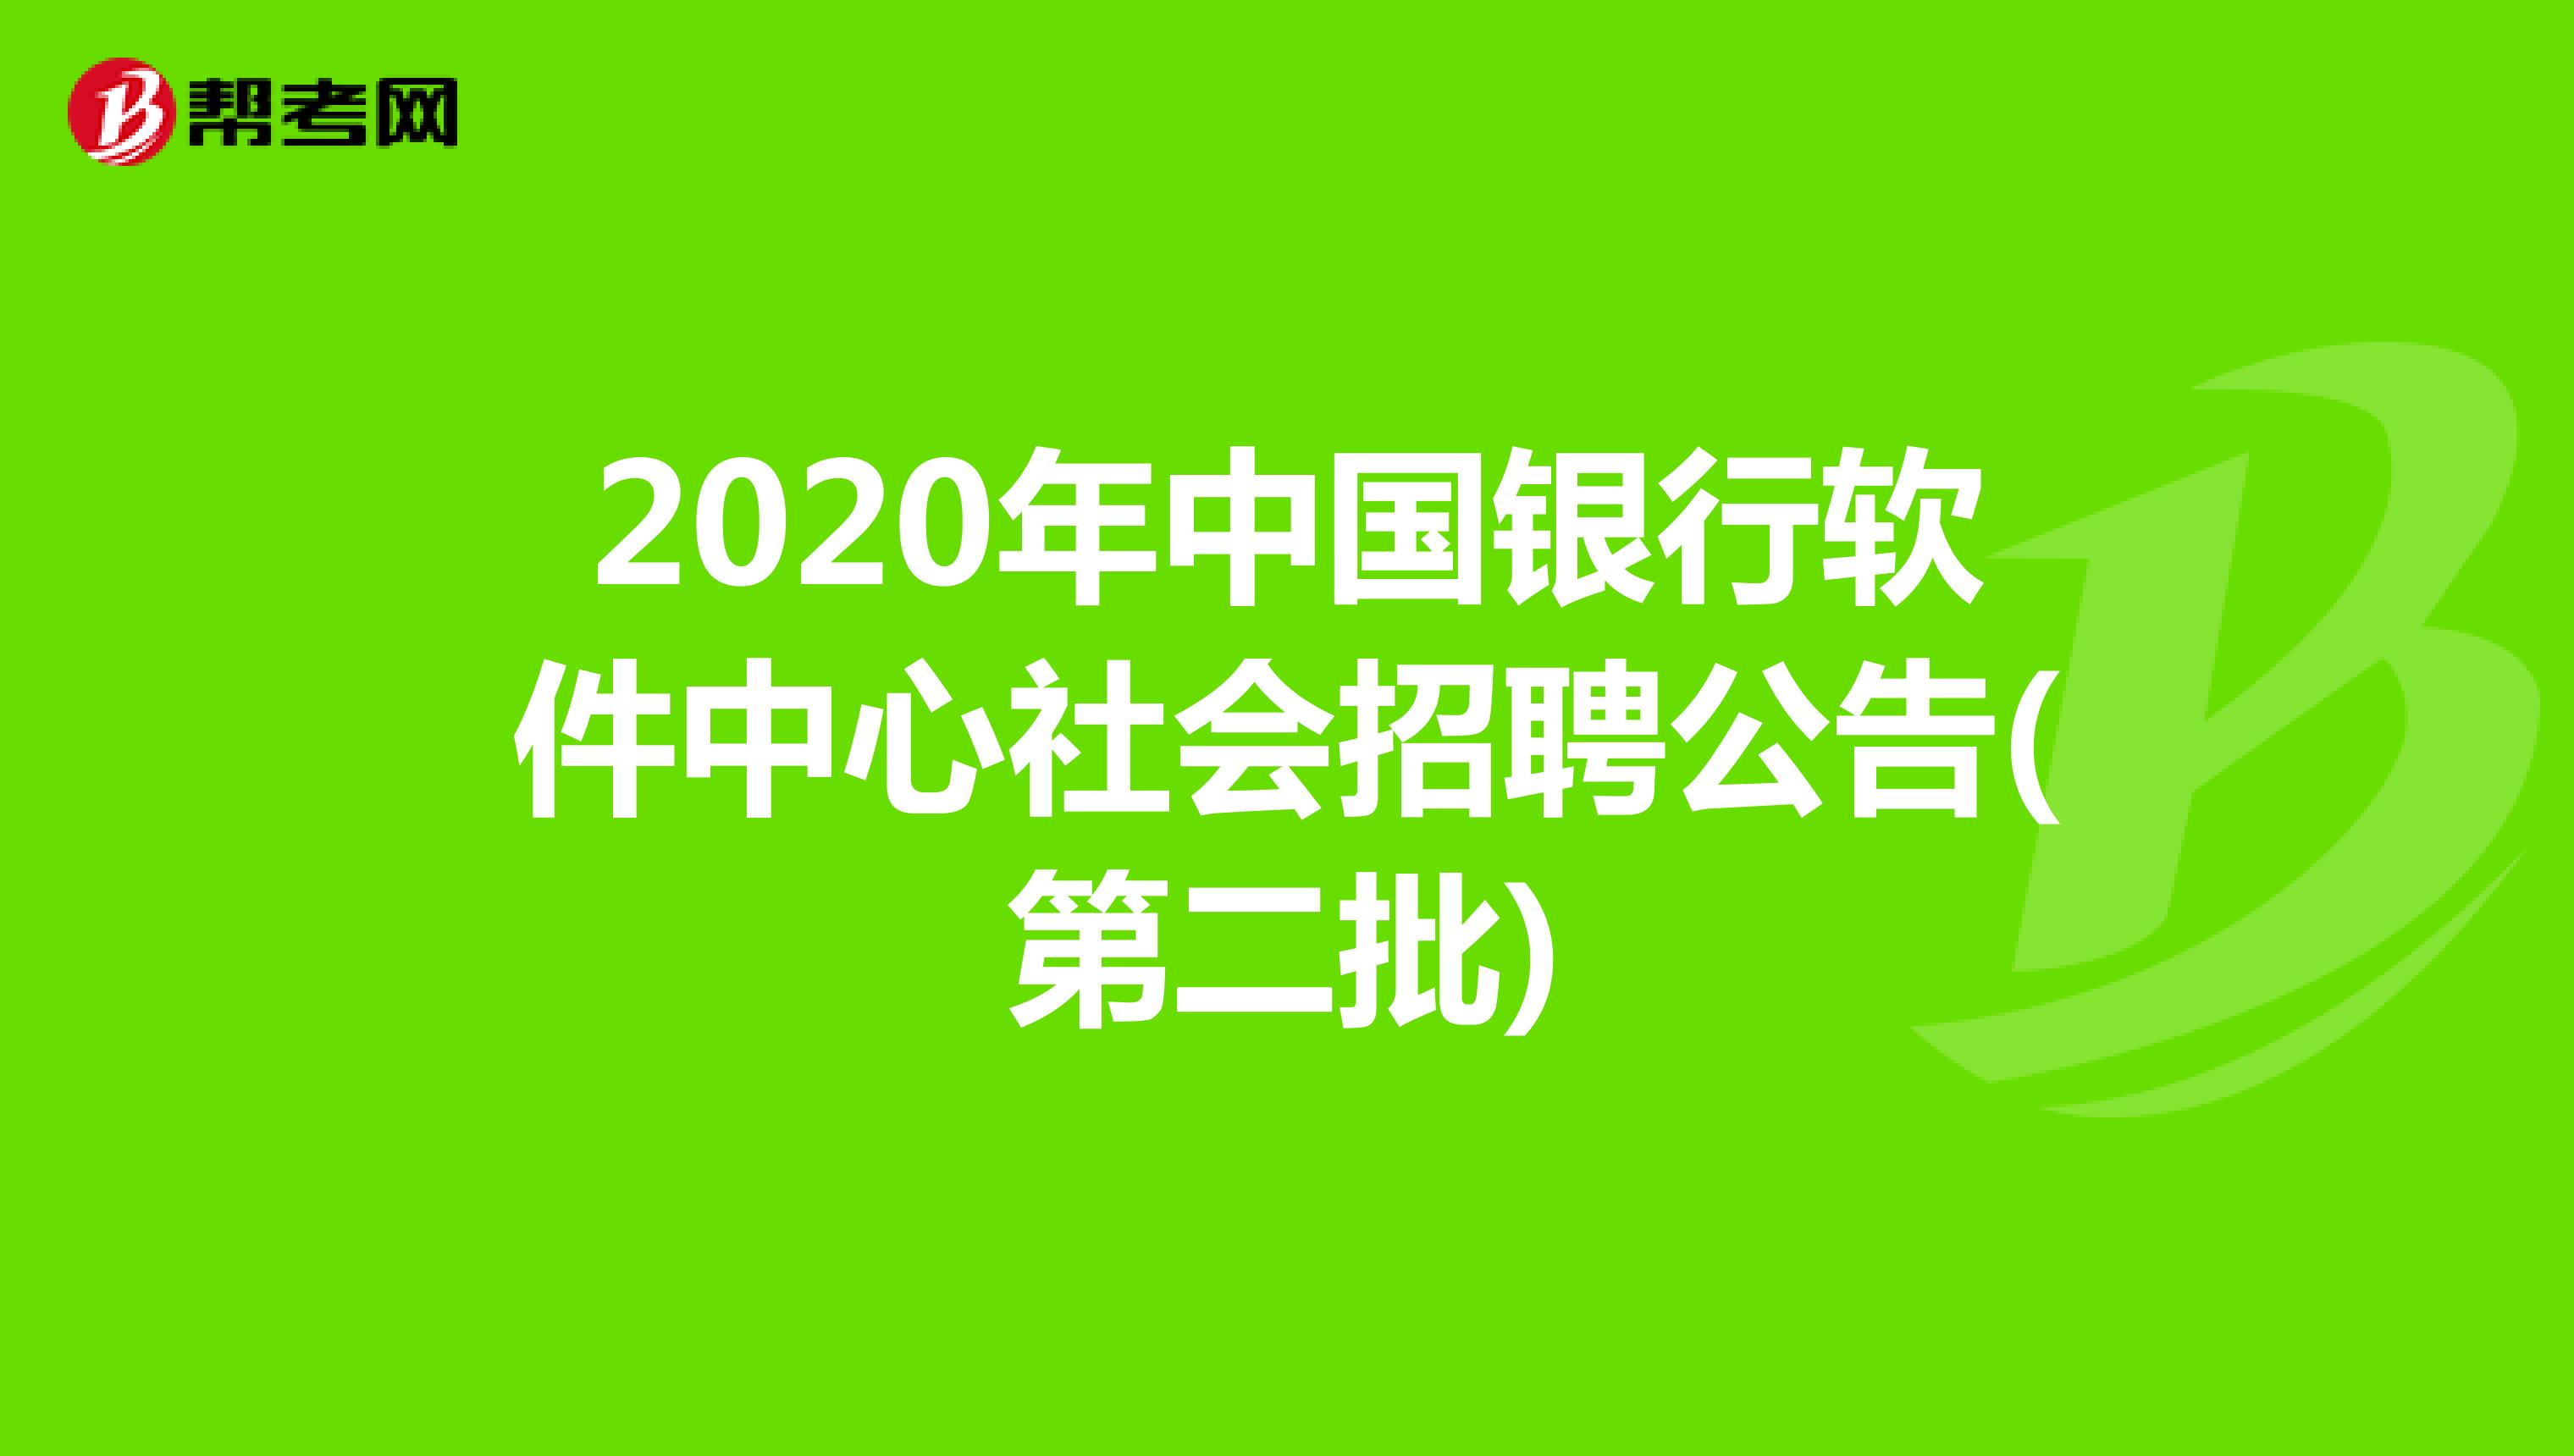 2020年中国银行软件中心社会招聘公告(第二批)